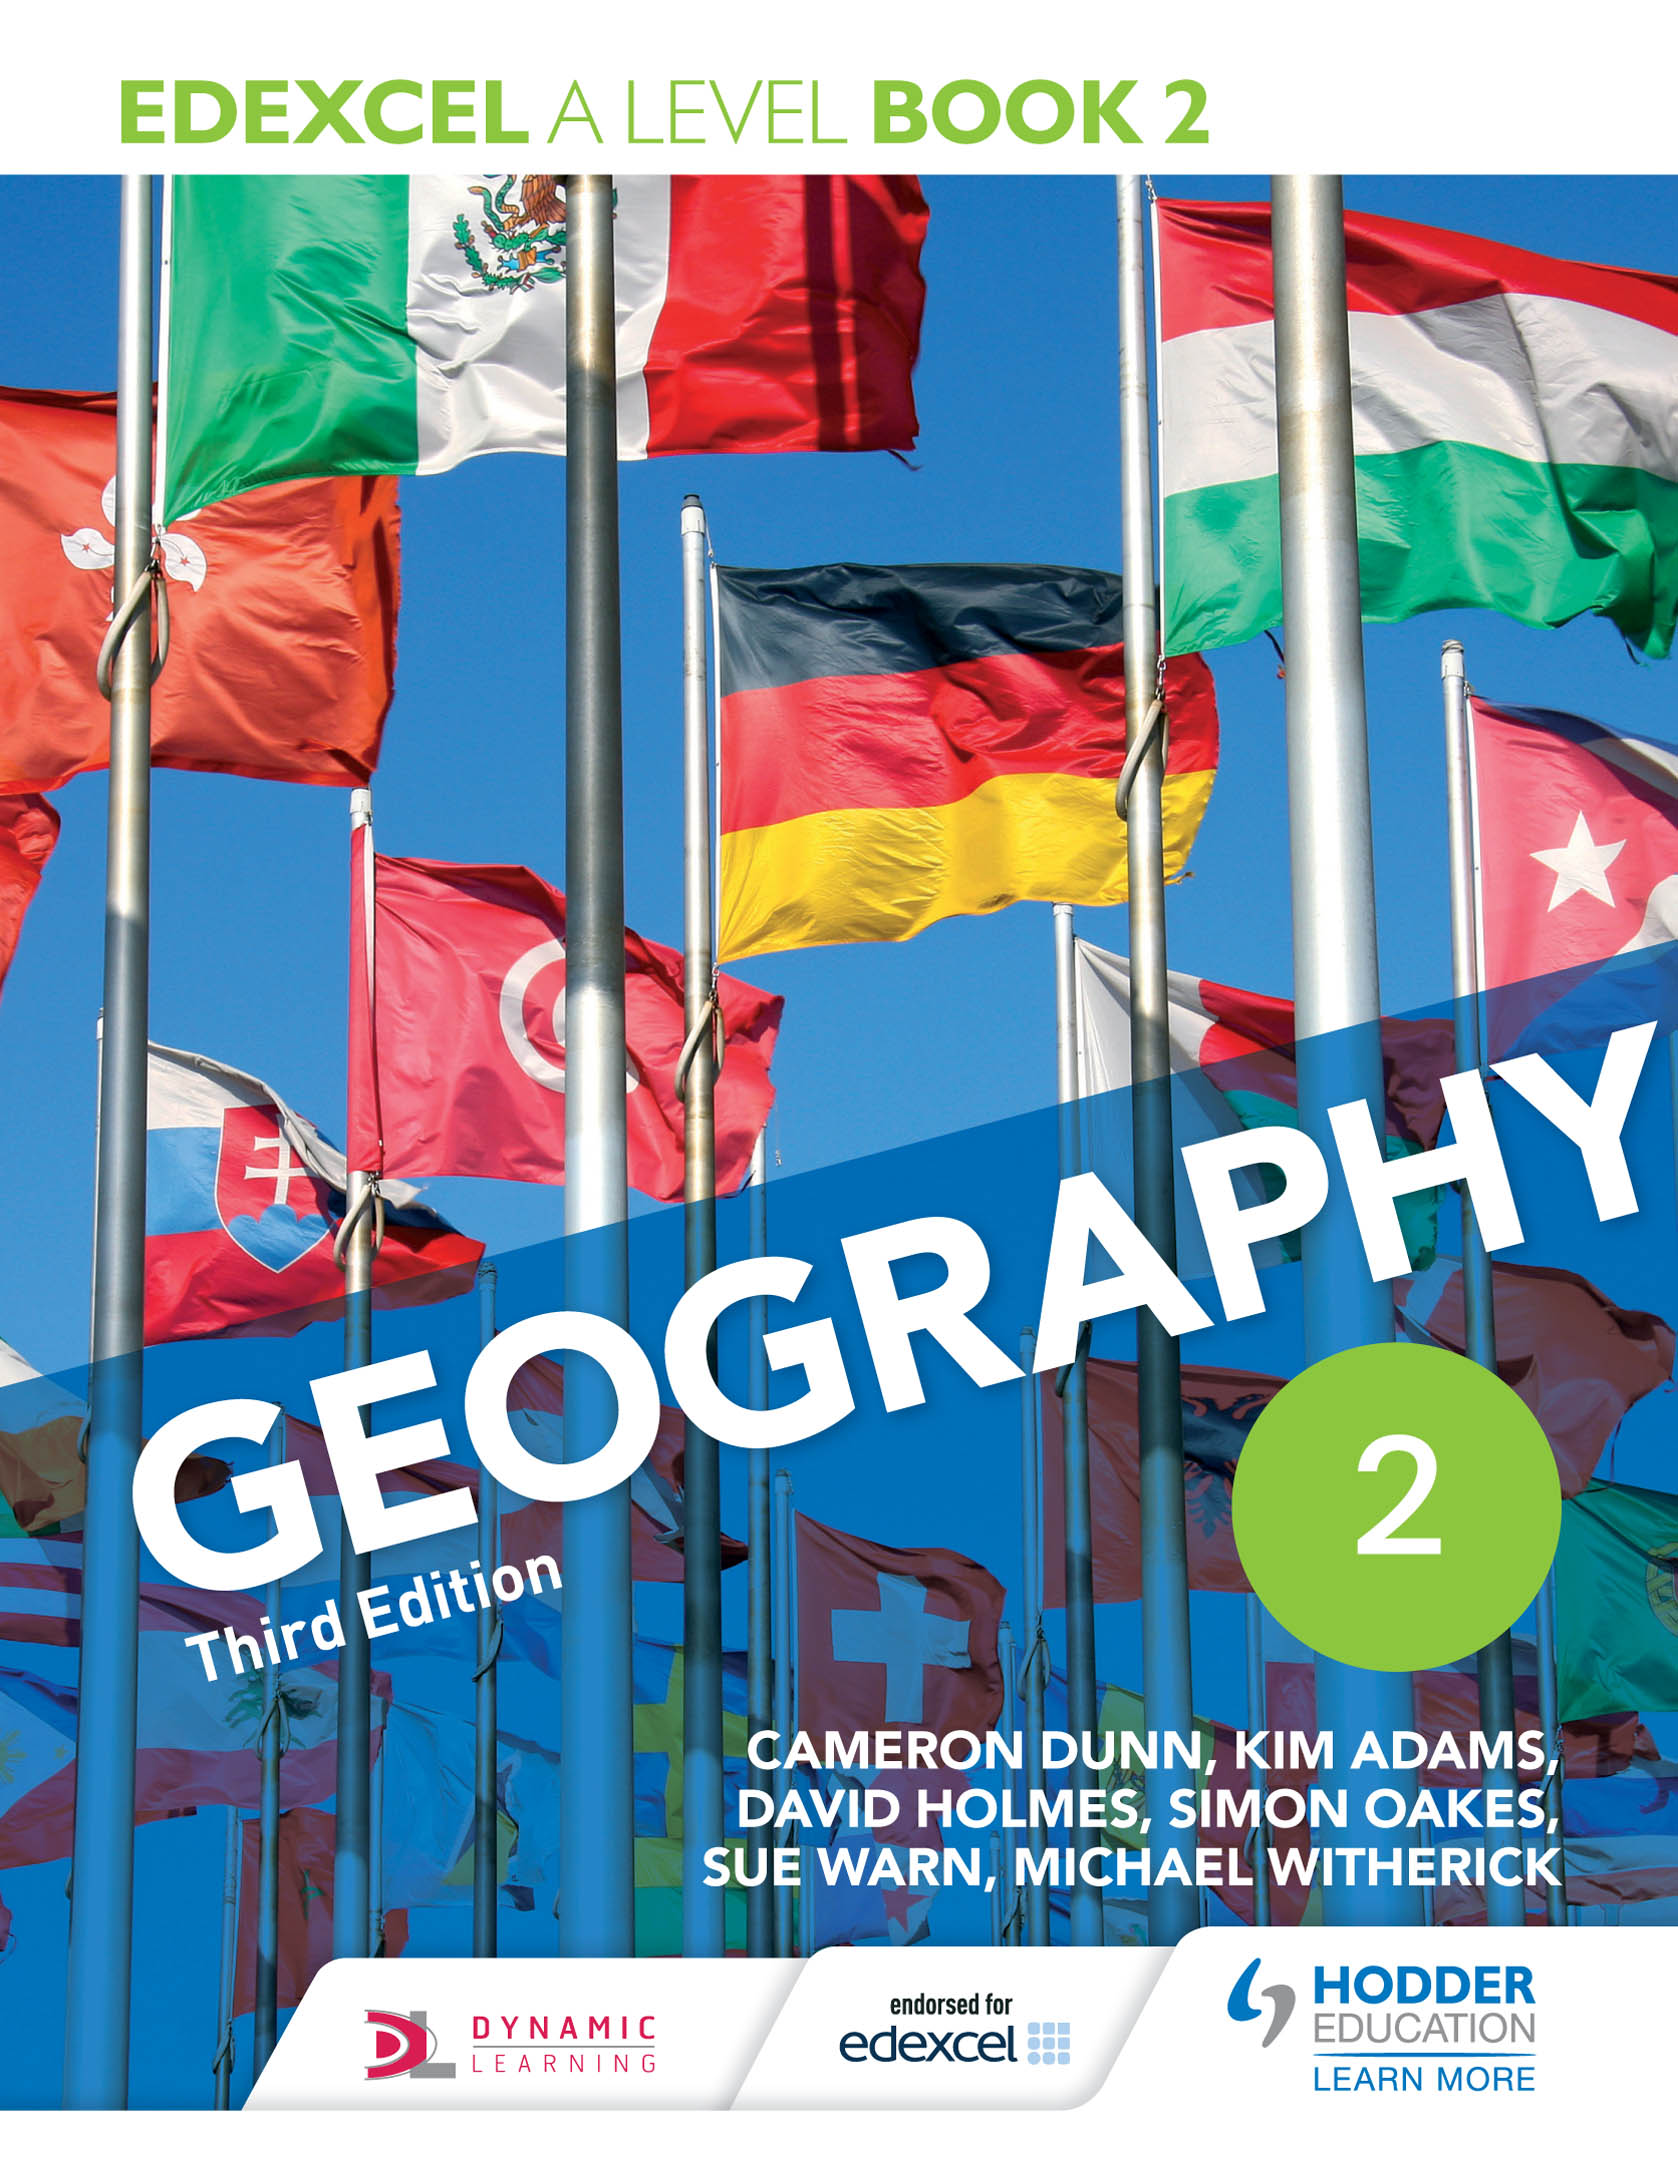 [DESCATALOGADO] Edexcel A level Geography Book 2 Third Edition